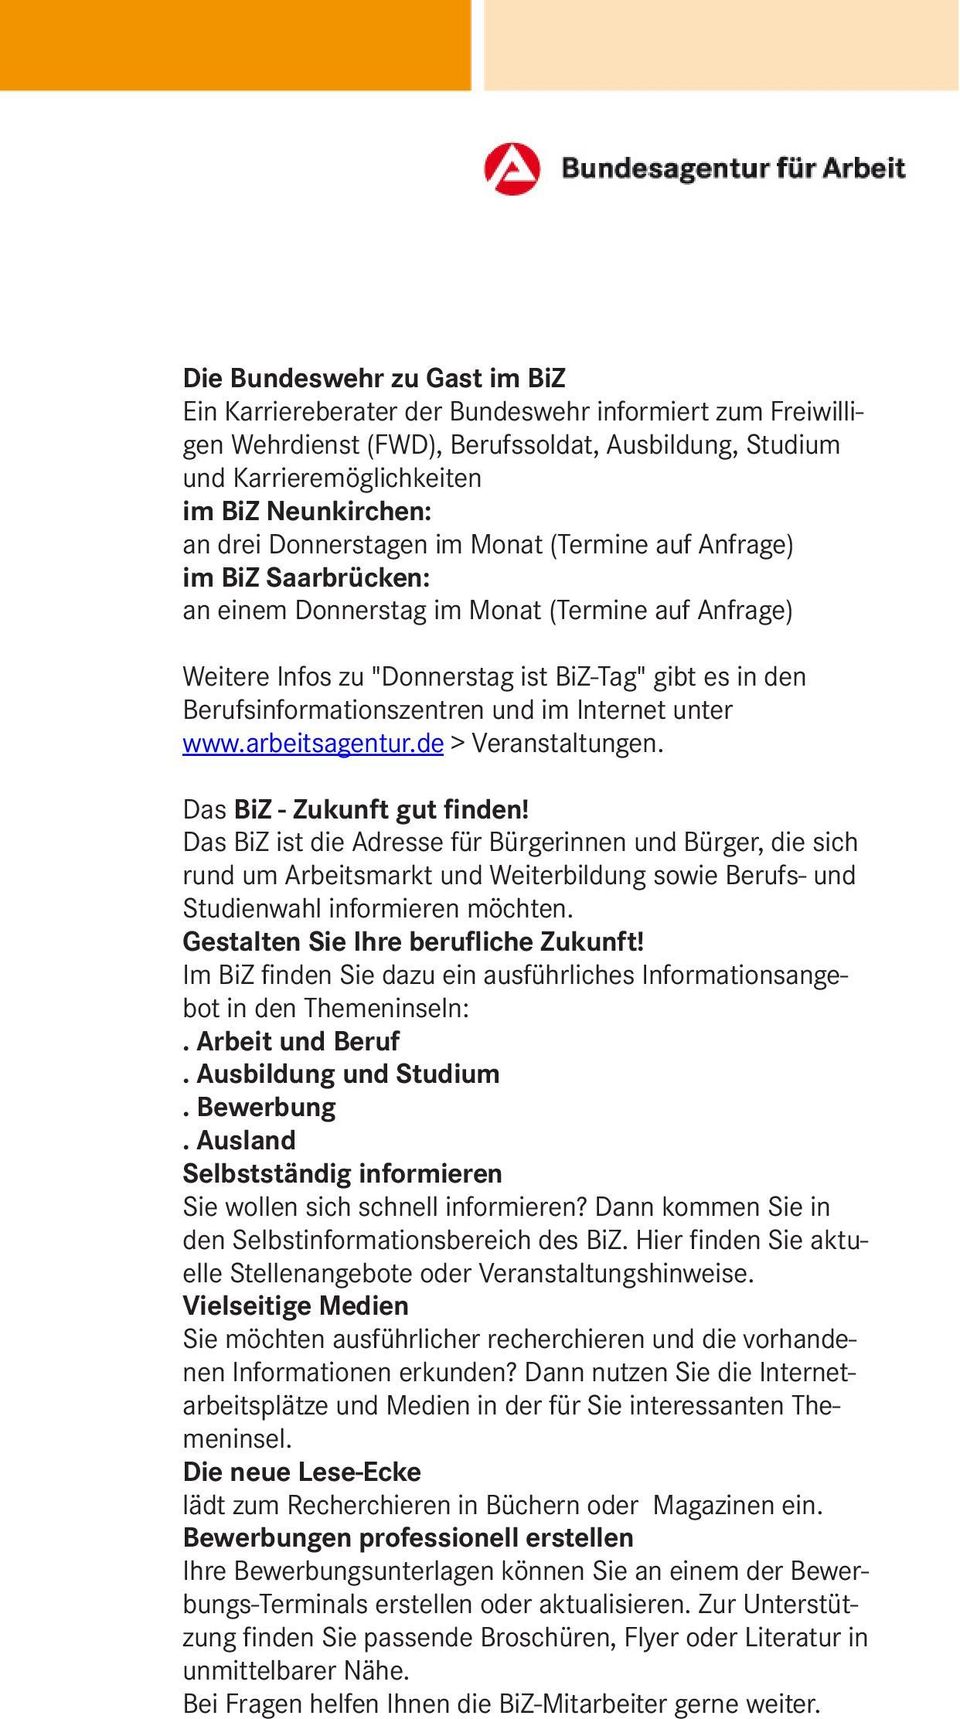 und im Internet unter www.arbeitsagentur.de > Veranstaltungen. Das BiZ - Zukunft gut finden!